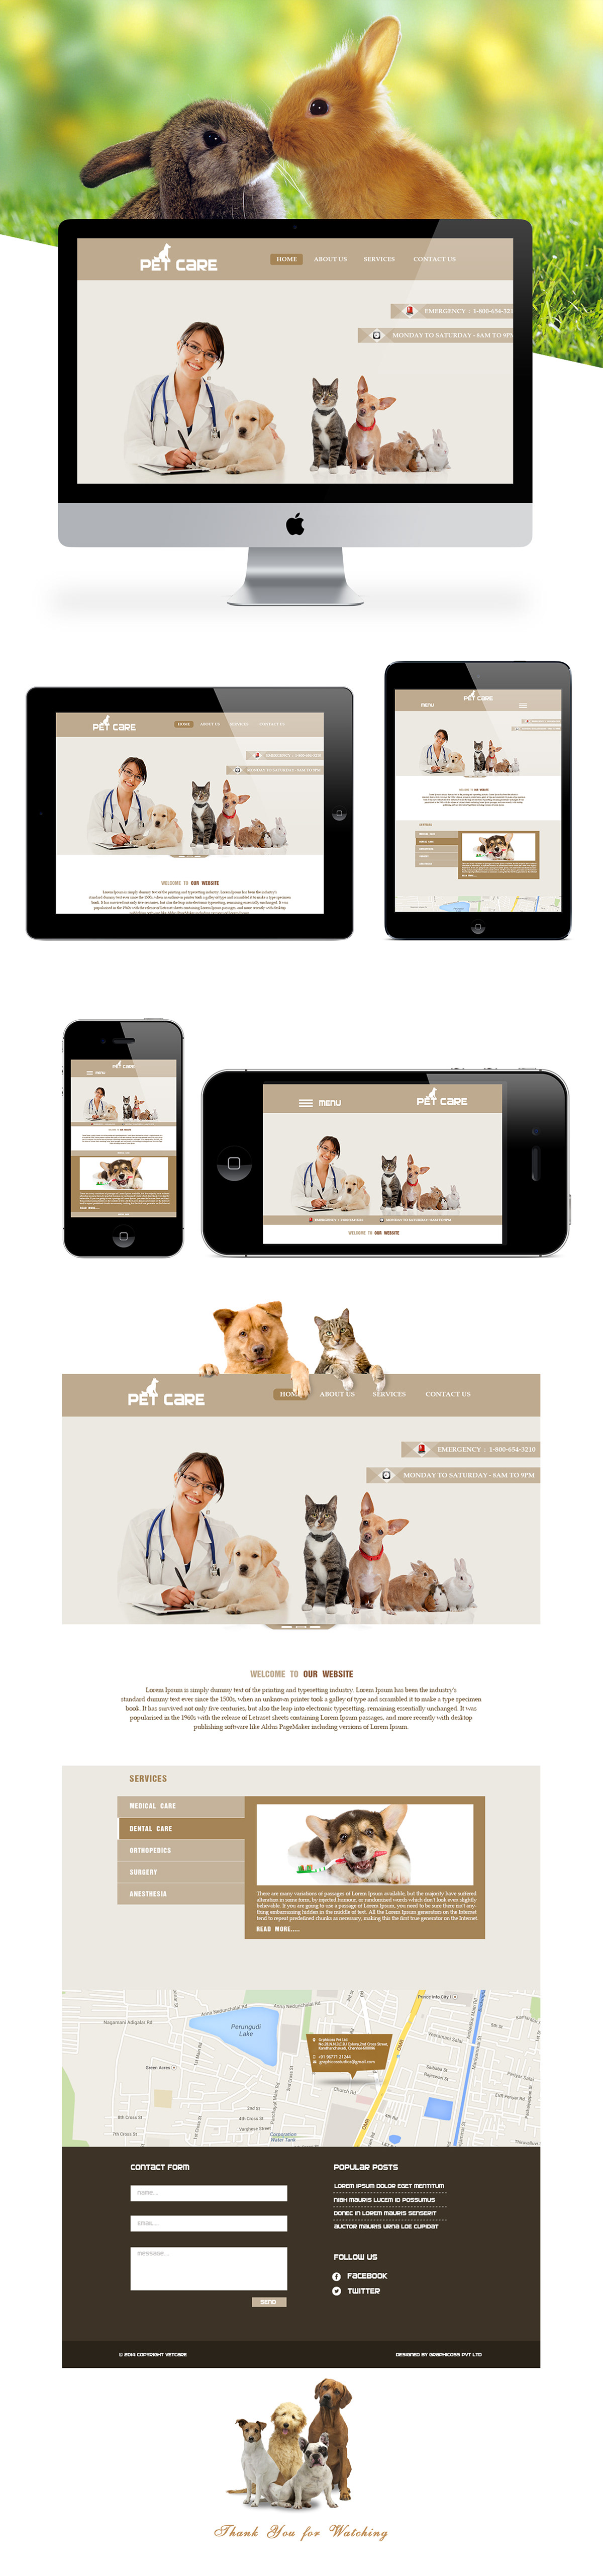 pet care Website Design